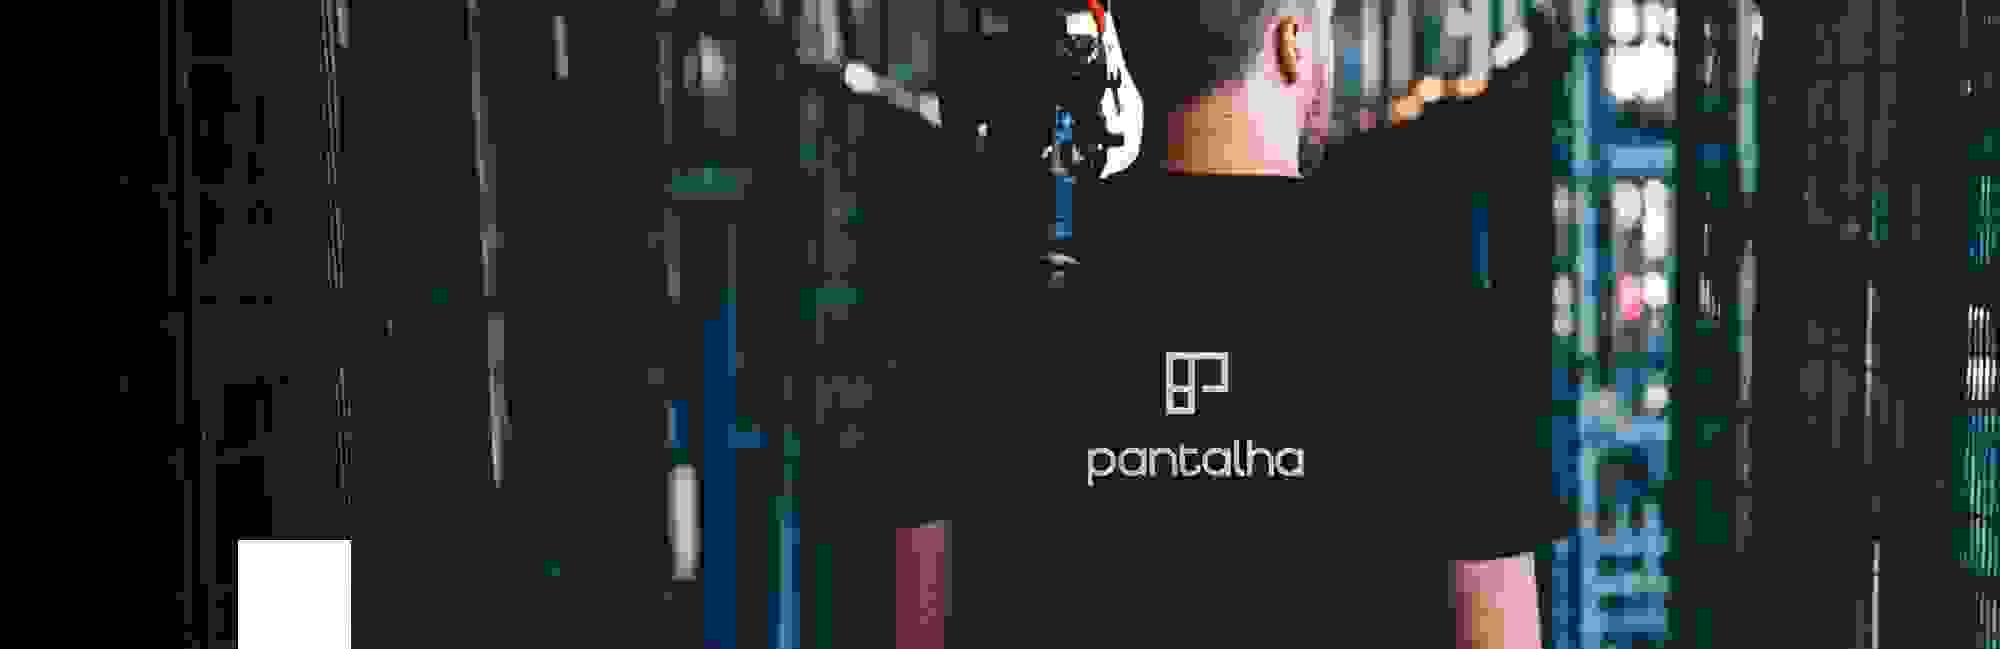 Pantalha-1